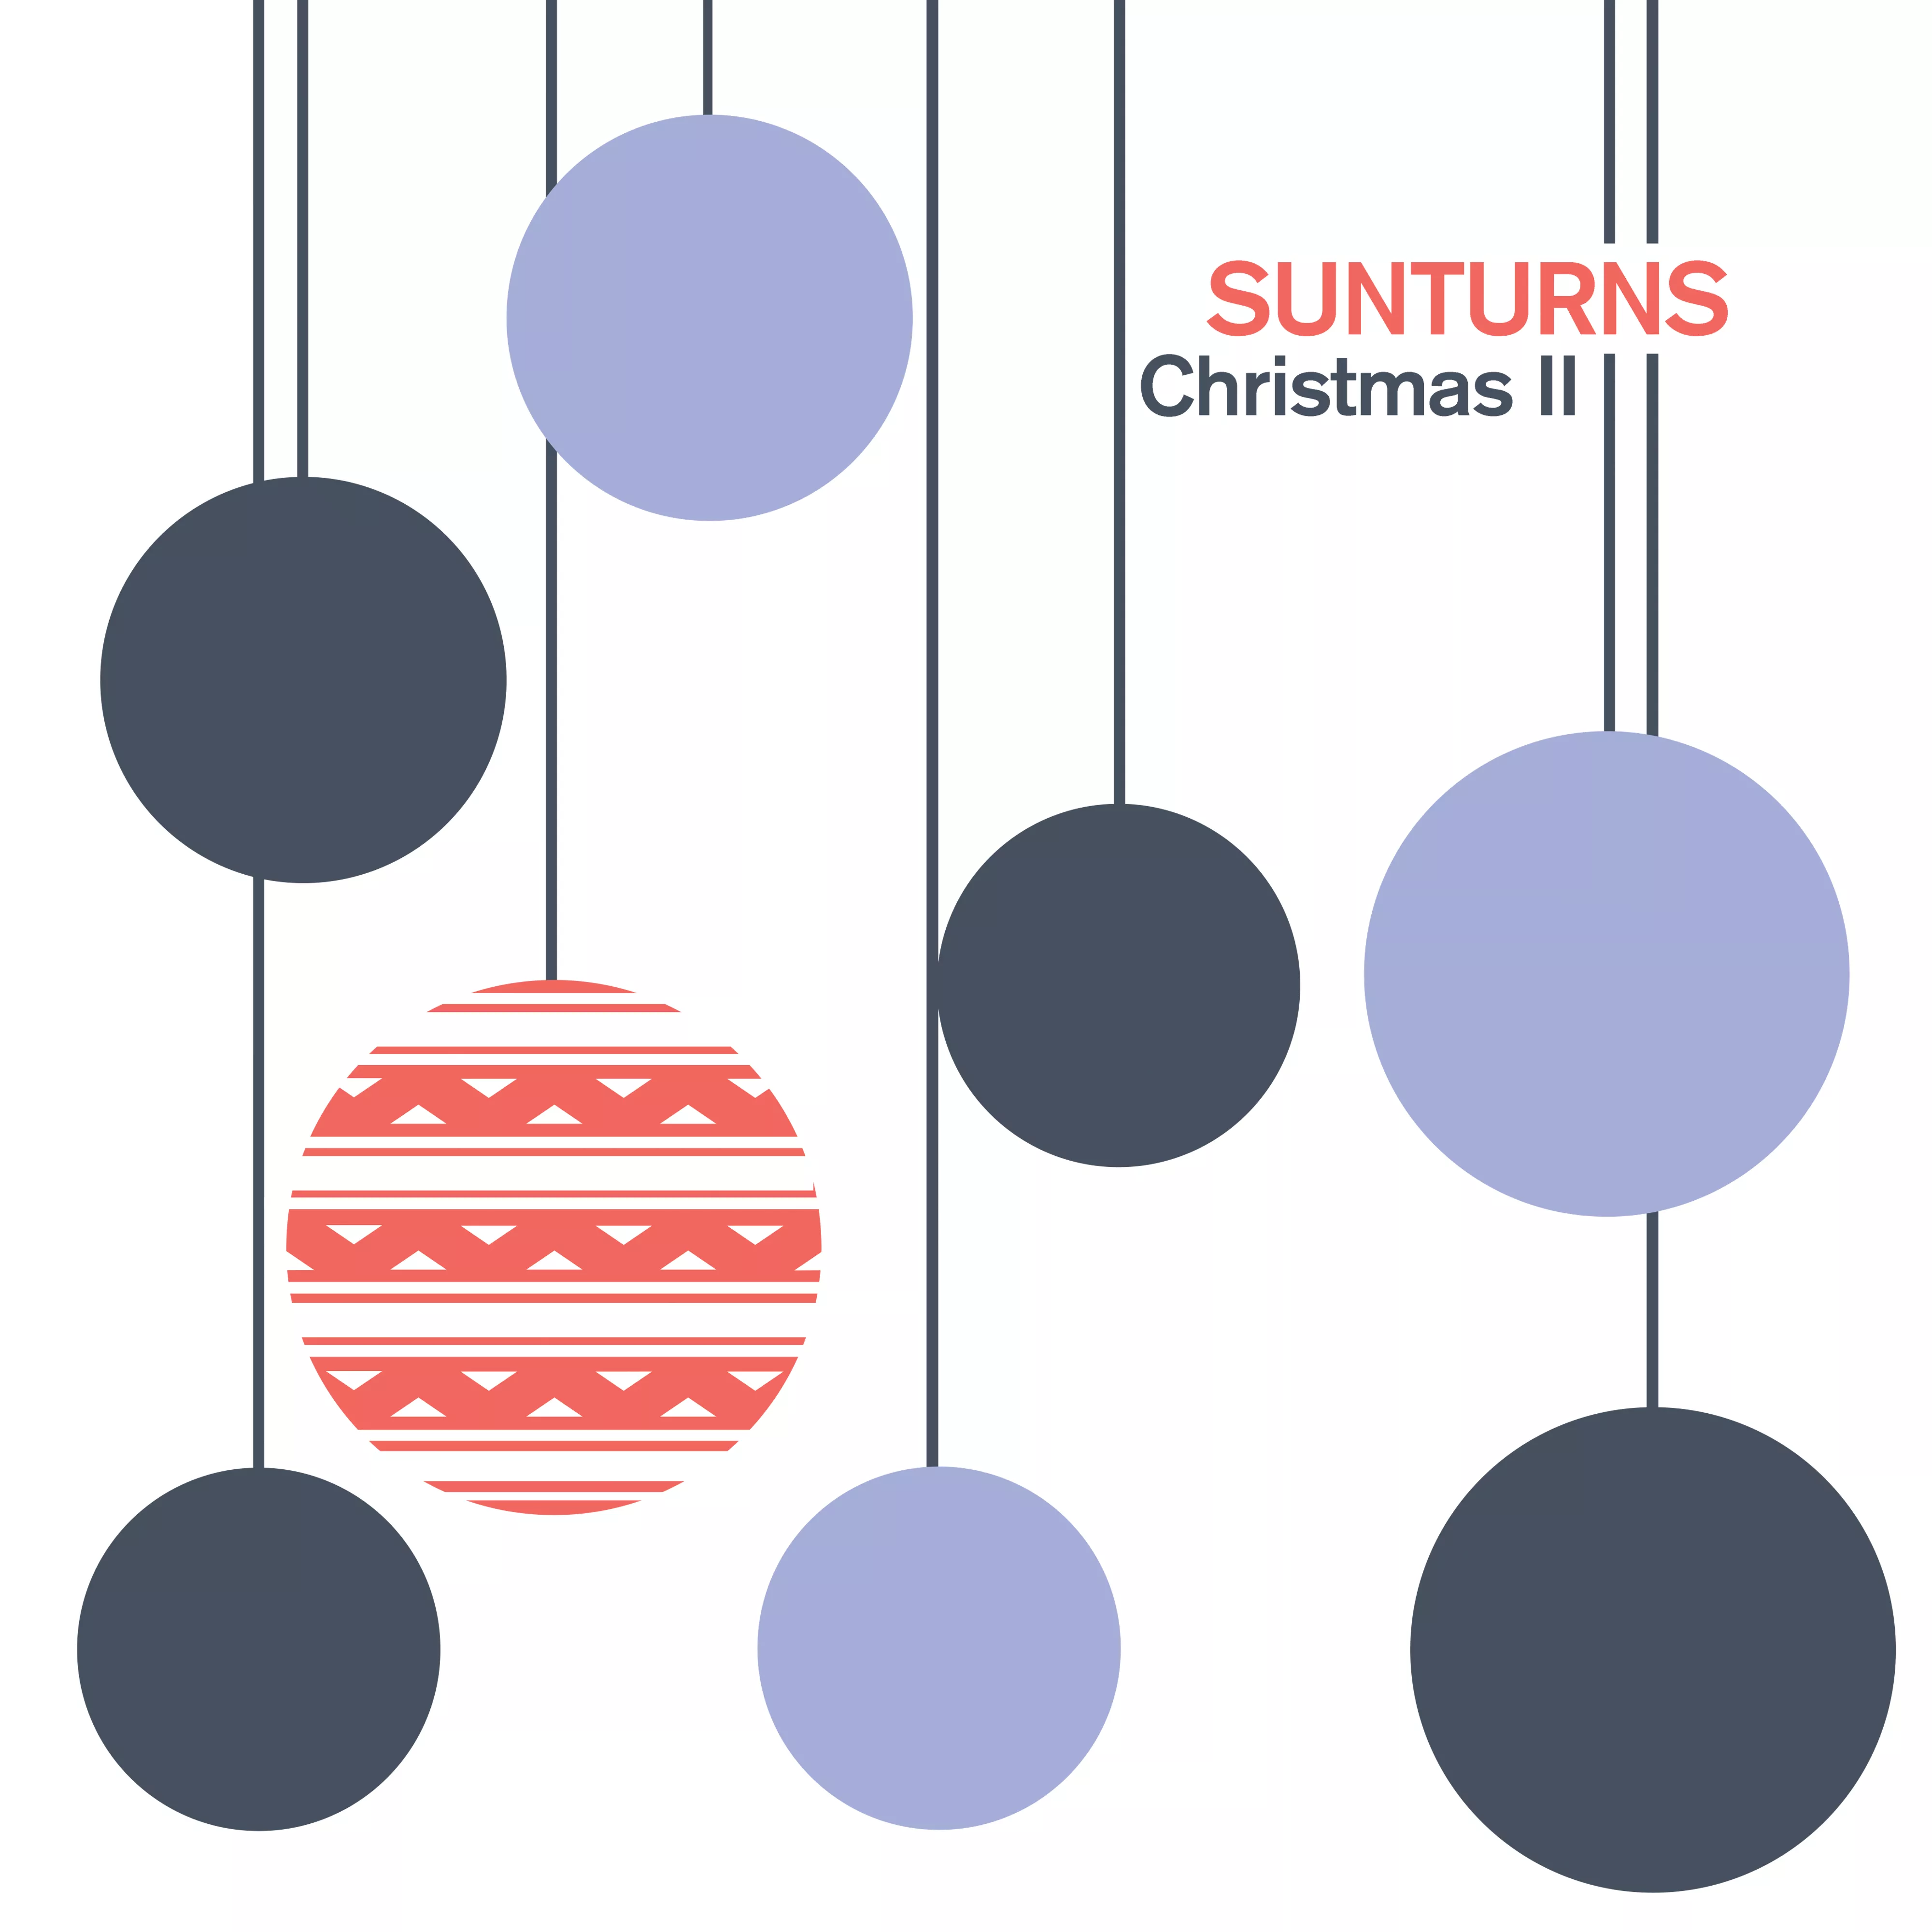 Christmas II - Sunturns